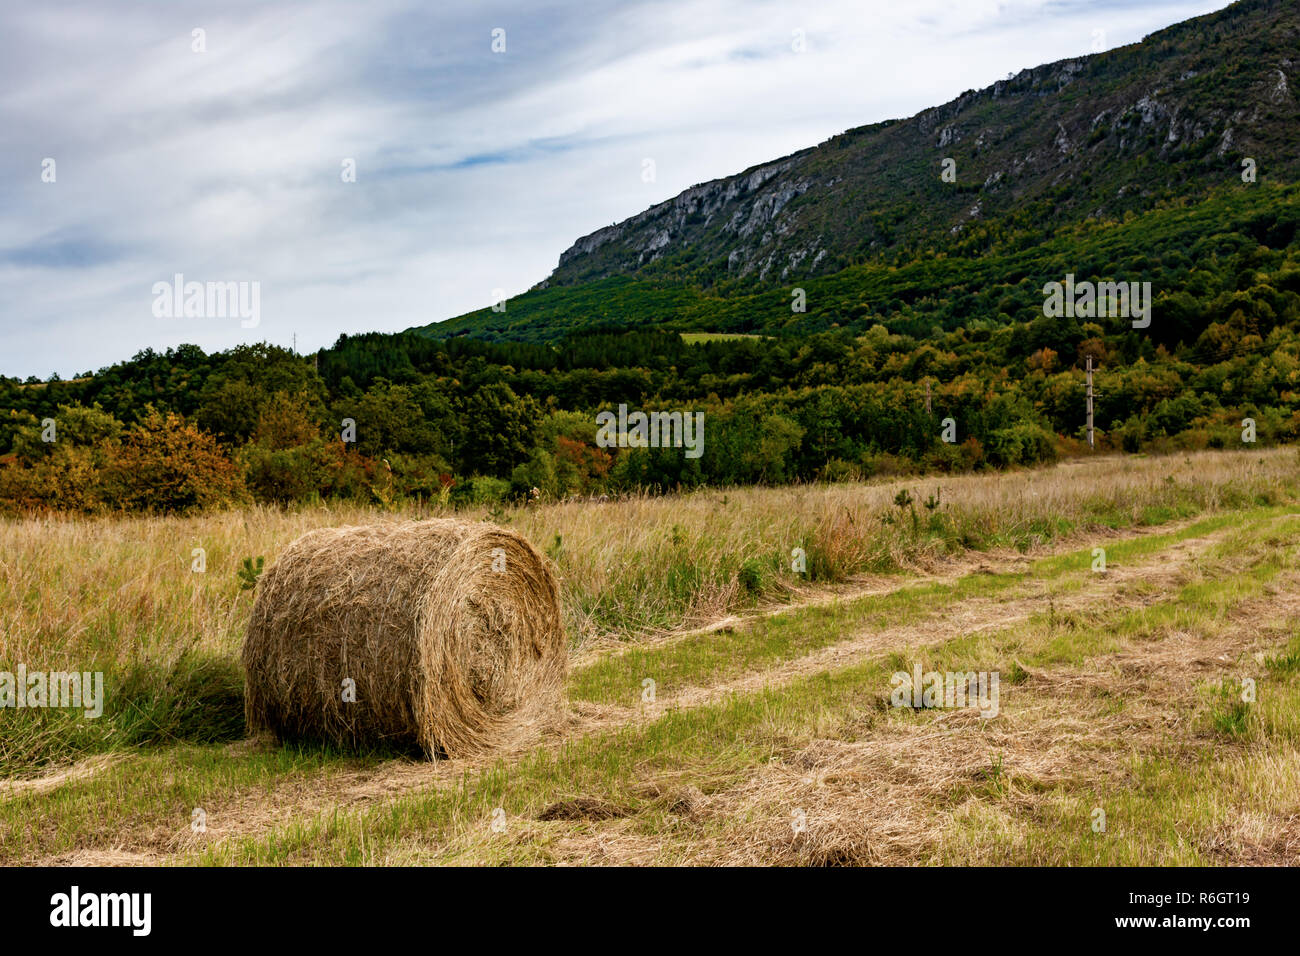 Hay. Landwirtschaft Feld mit mounatin und Sky. Ländliche Natur in der Farm Land. Stroh auf der Wiese. Weizen gelb Goldenen Ernte im Spätsommer. Stockfoto